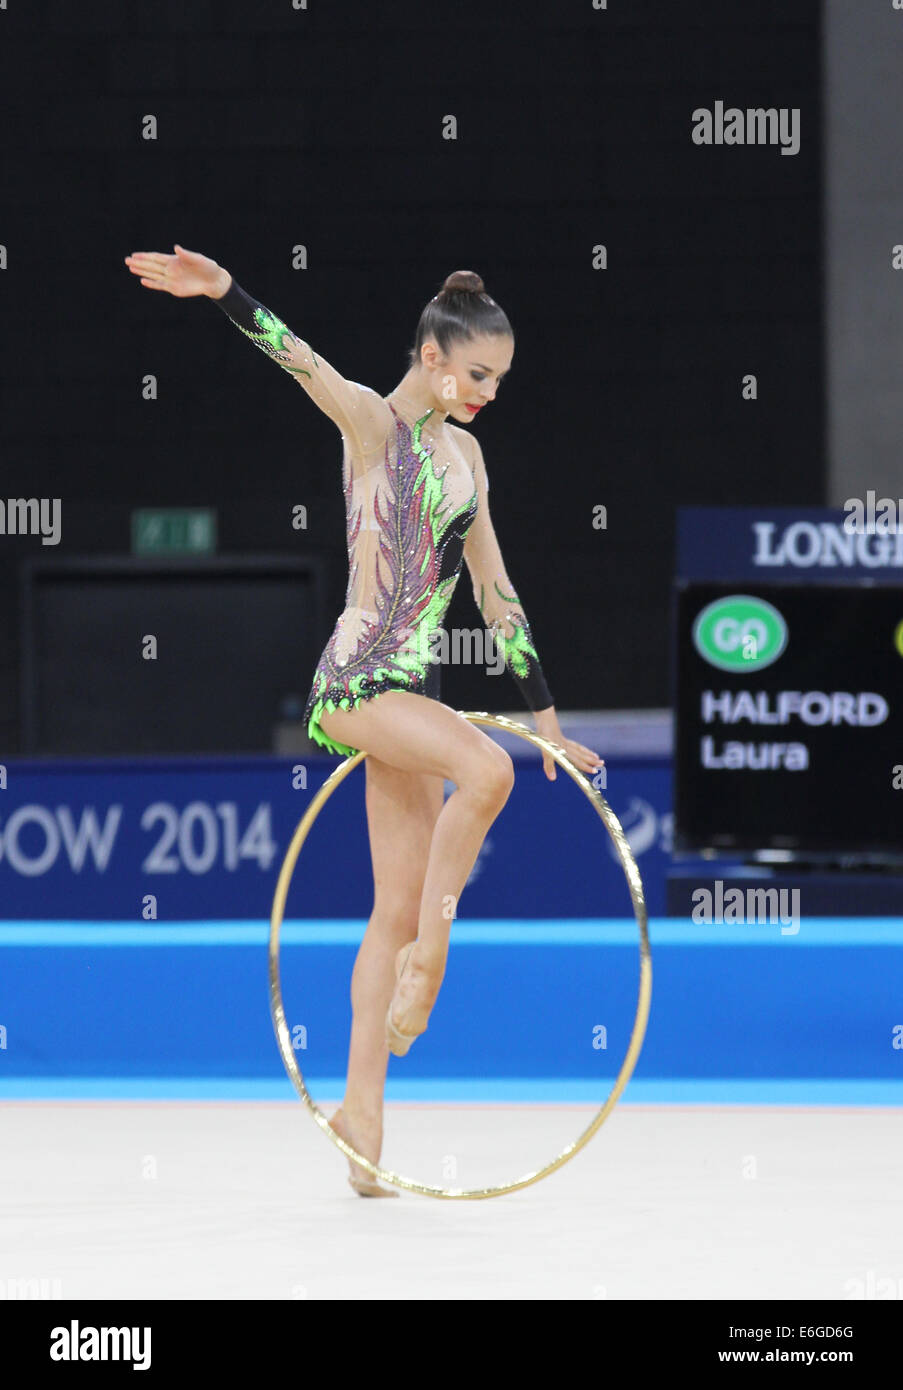 Laura Halford de galles dans le cerceau de gymnastique rythmique (section) au Jeux du Commonwealth de 2014 à Glasgow. Banque D'Images